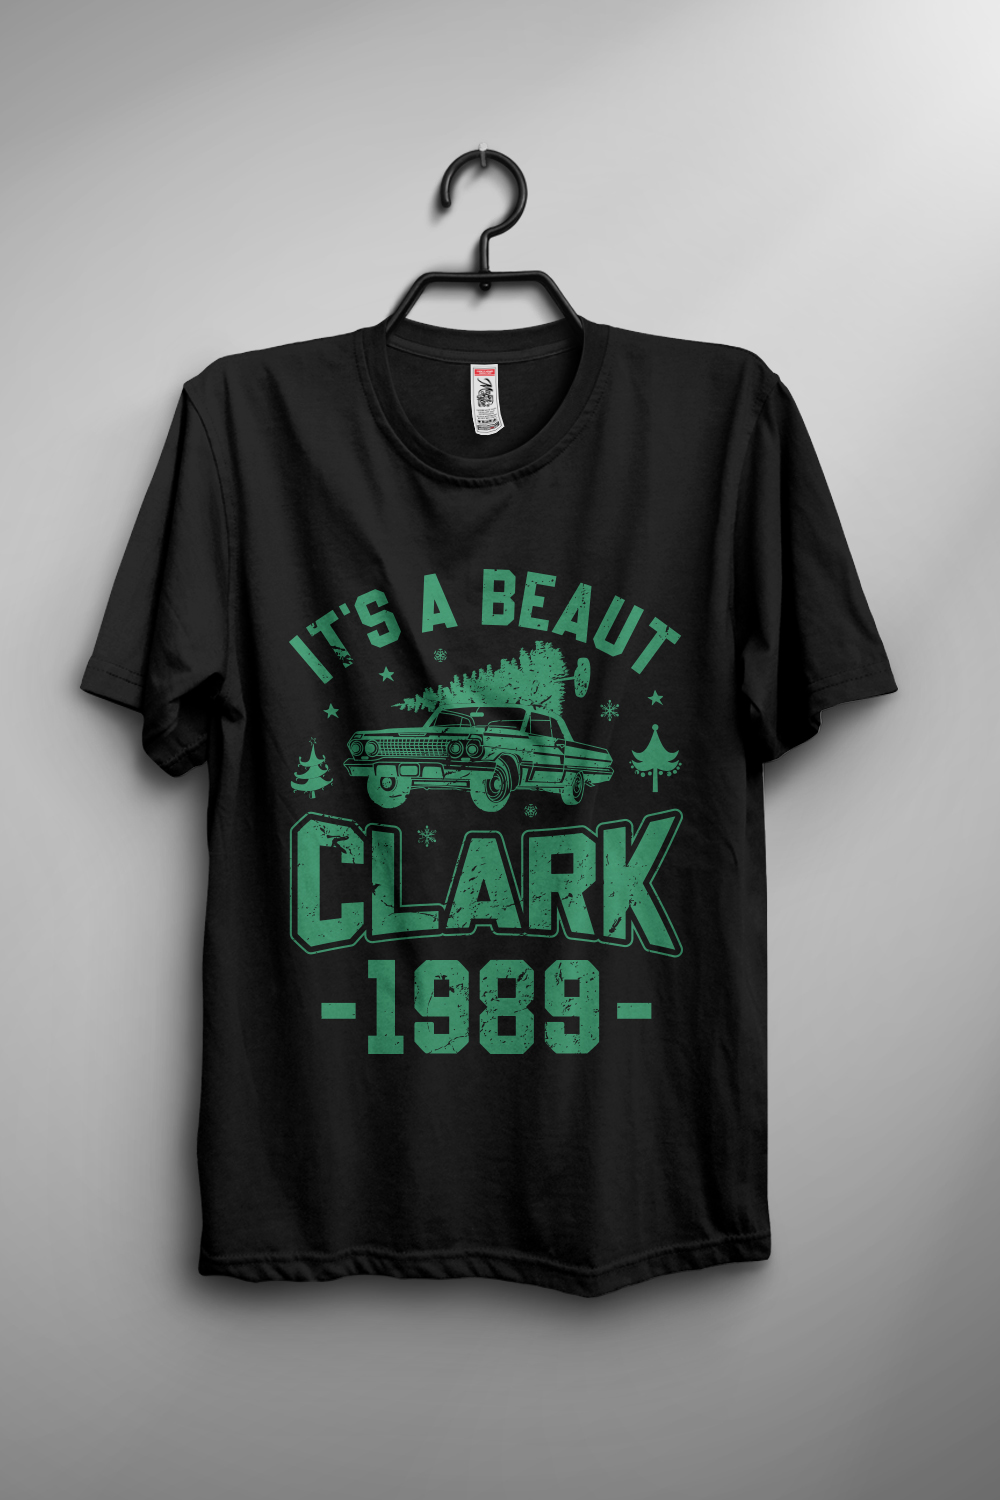 It's a beaut clark 1989 T-shirt design pinterest preview image.